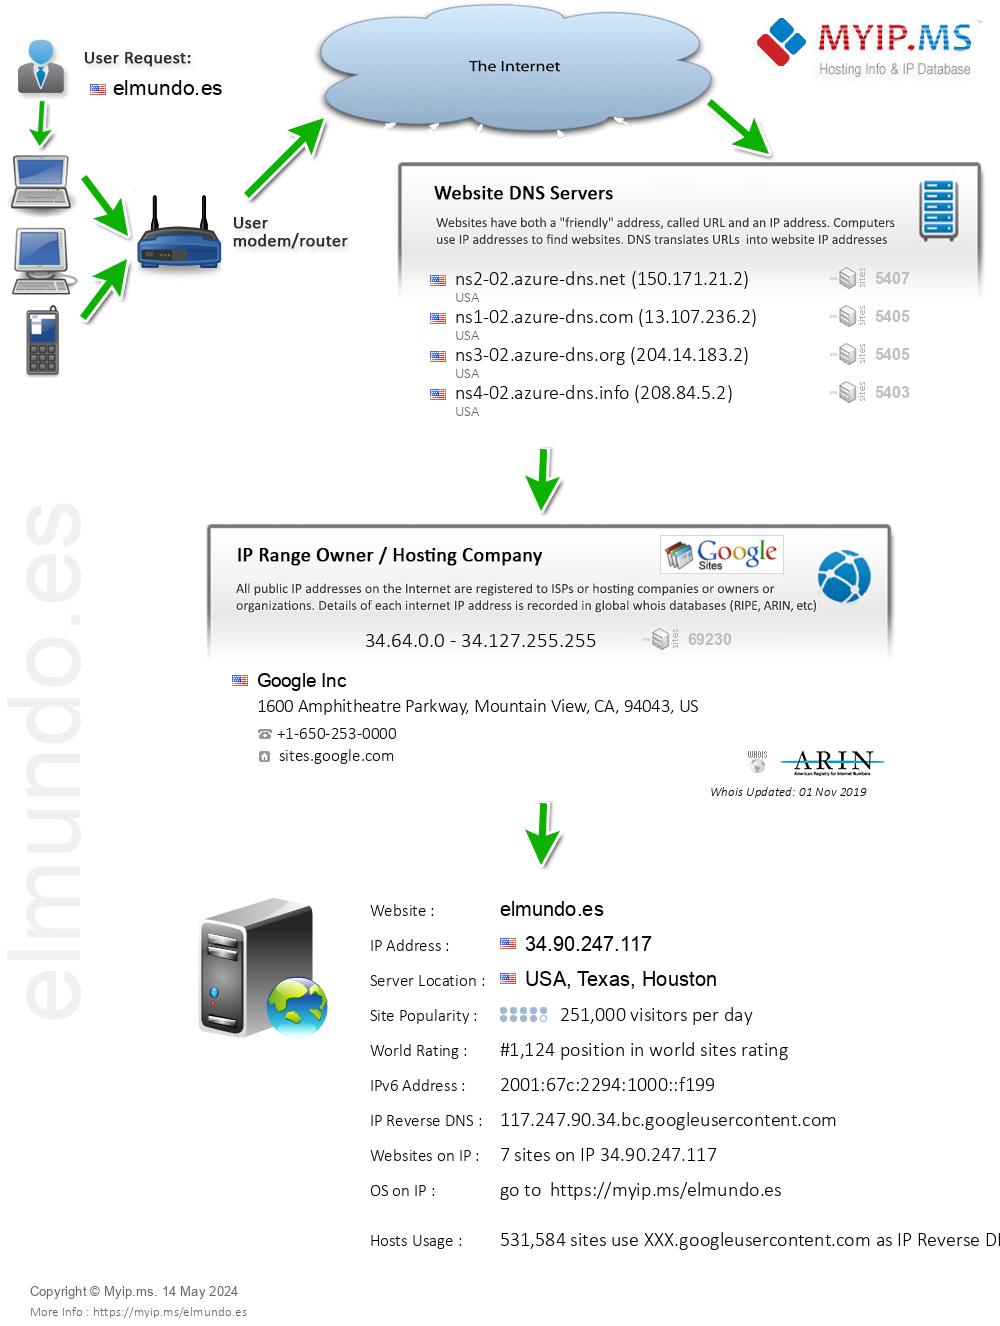 Elmundo.es - Website Hosting Visual IP Diagram